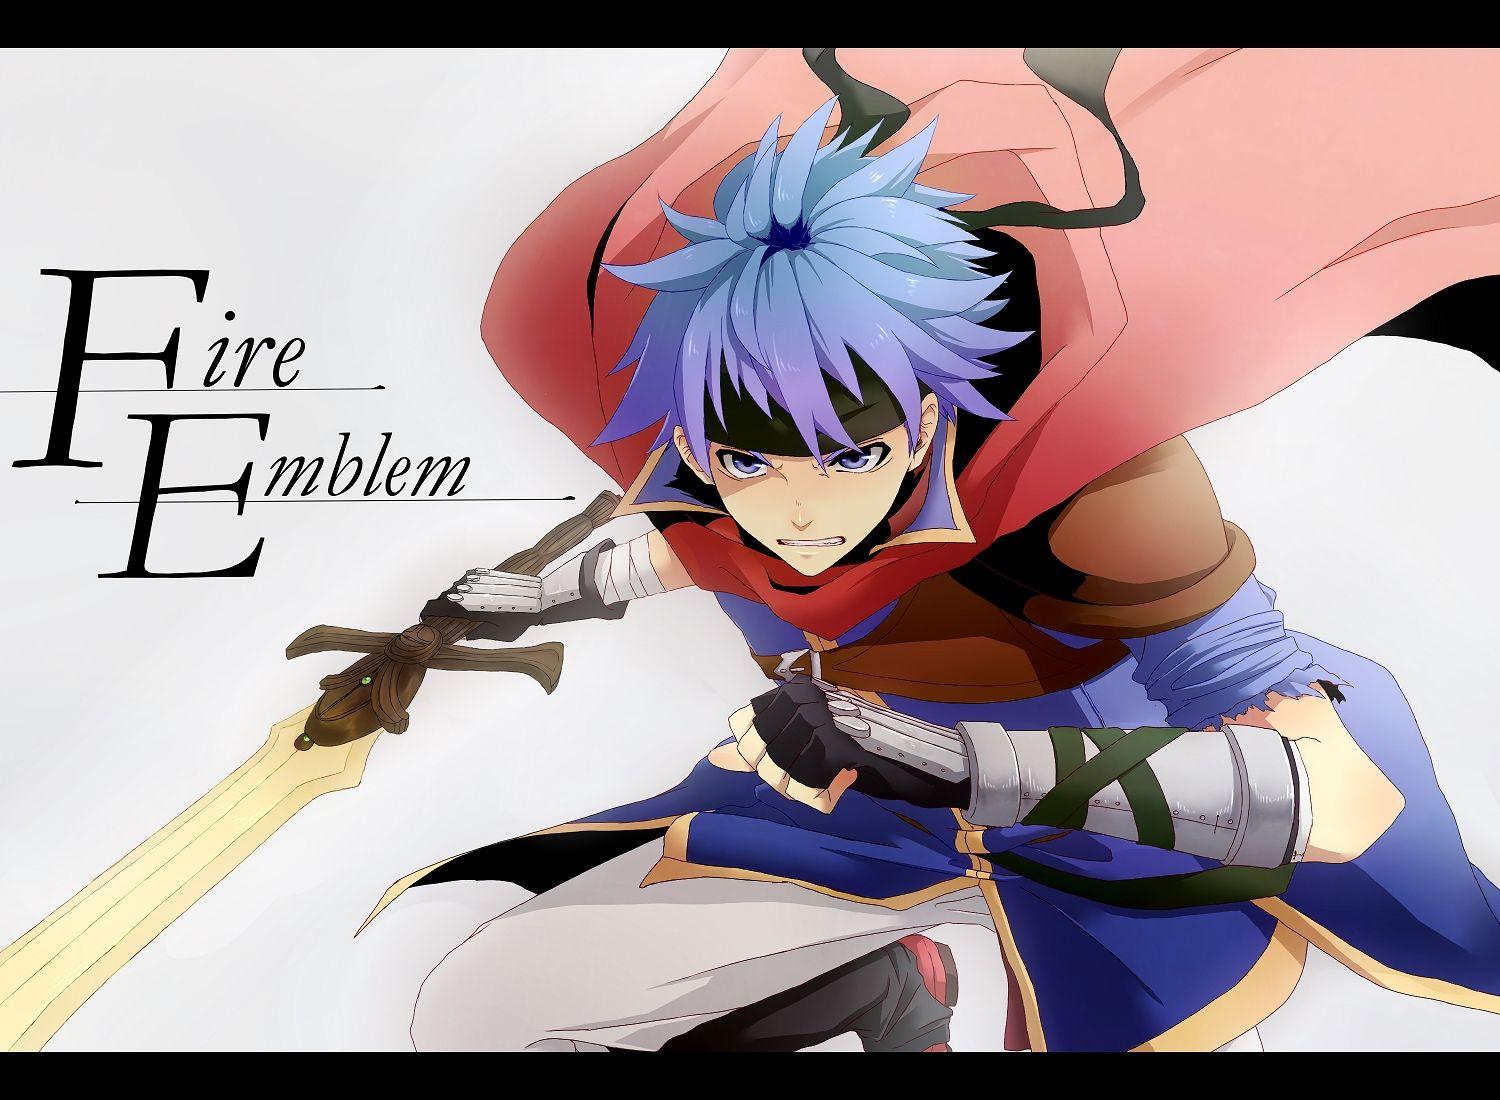 Ike Emblem: Path of Radiance Anime Image Board